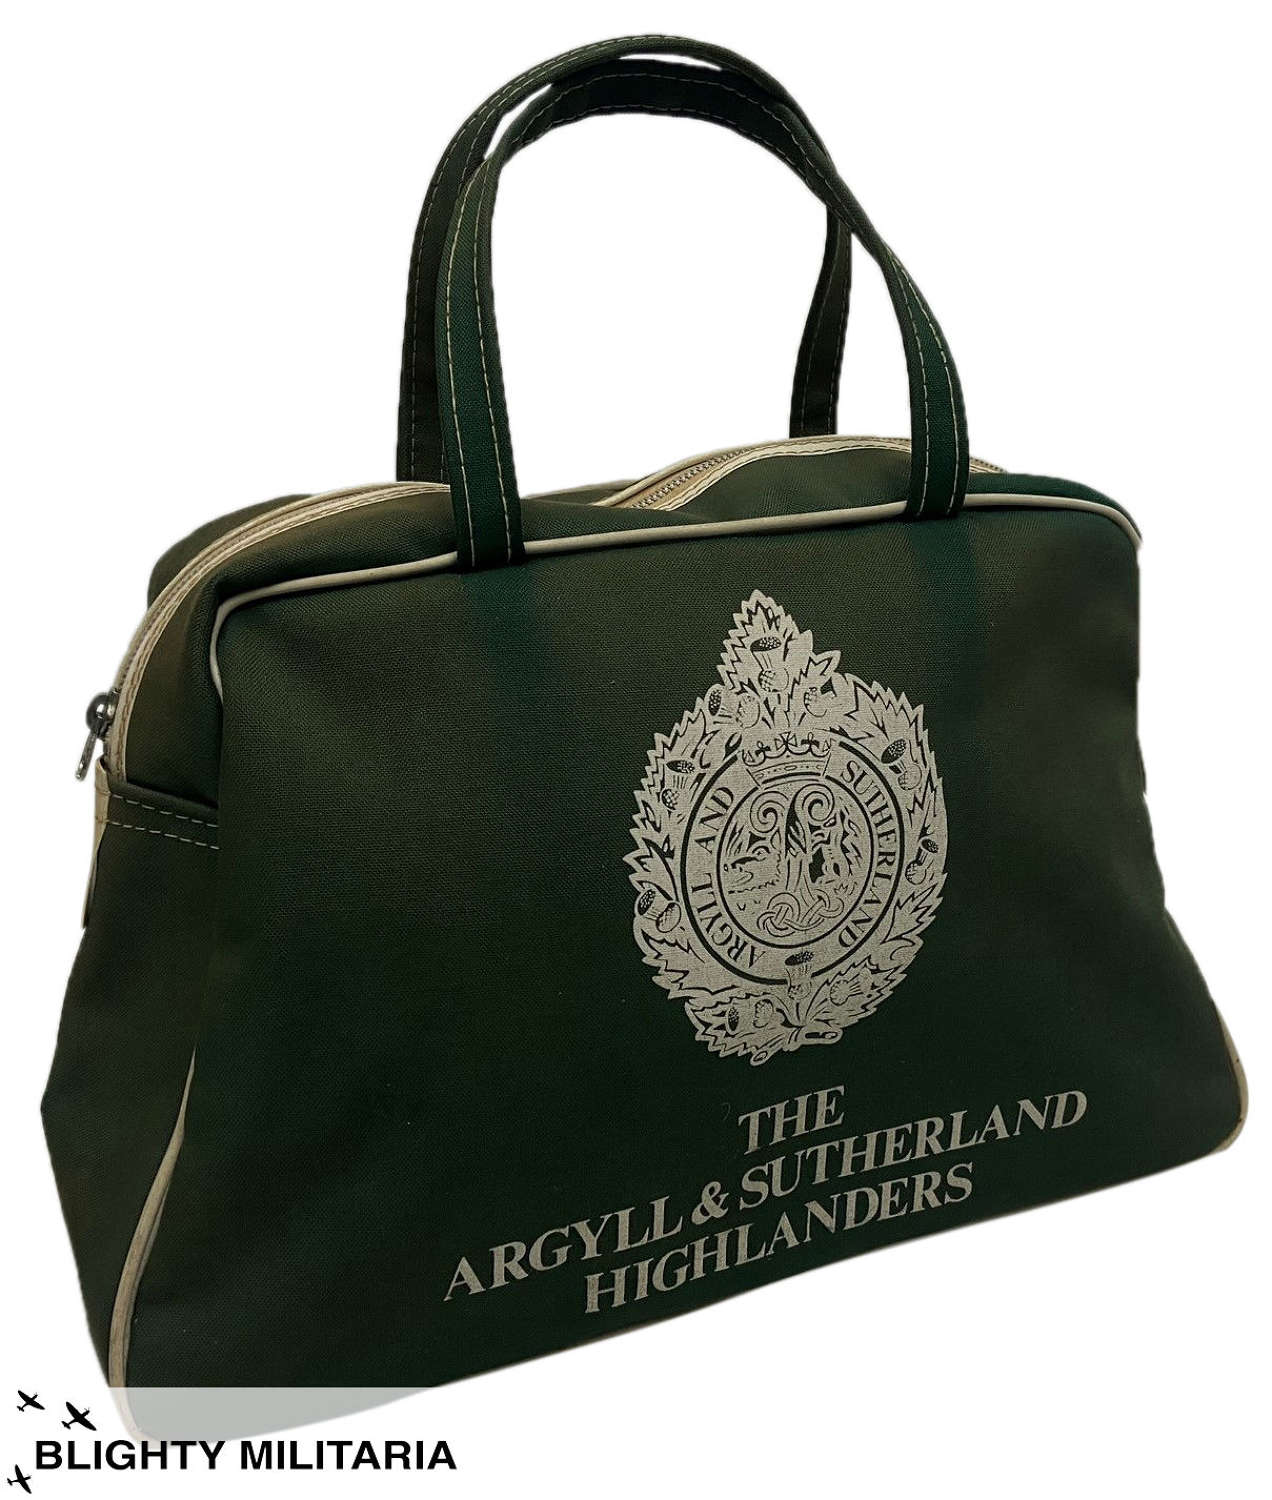 Original 1960s Argyll & Sutherland Highlanders Travel Bag